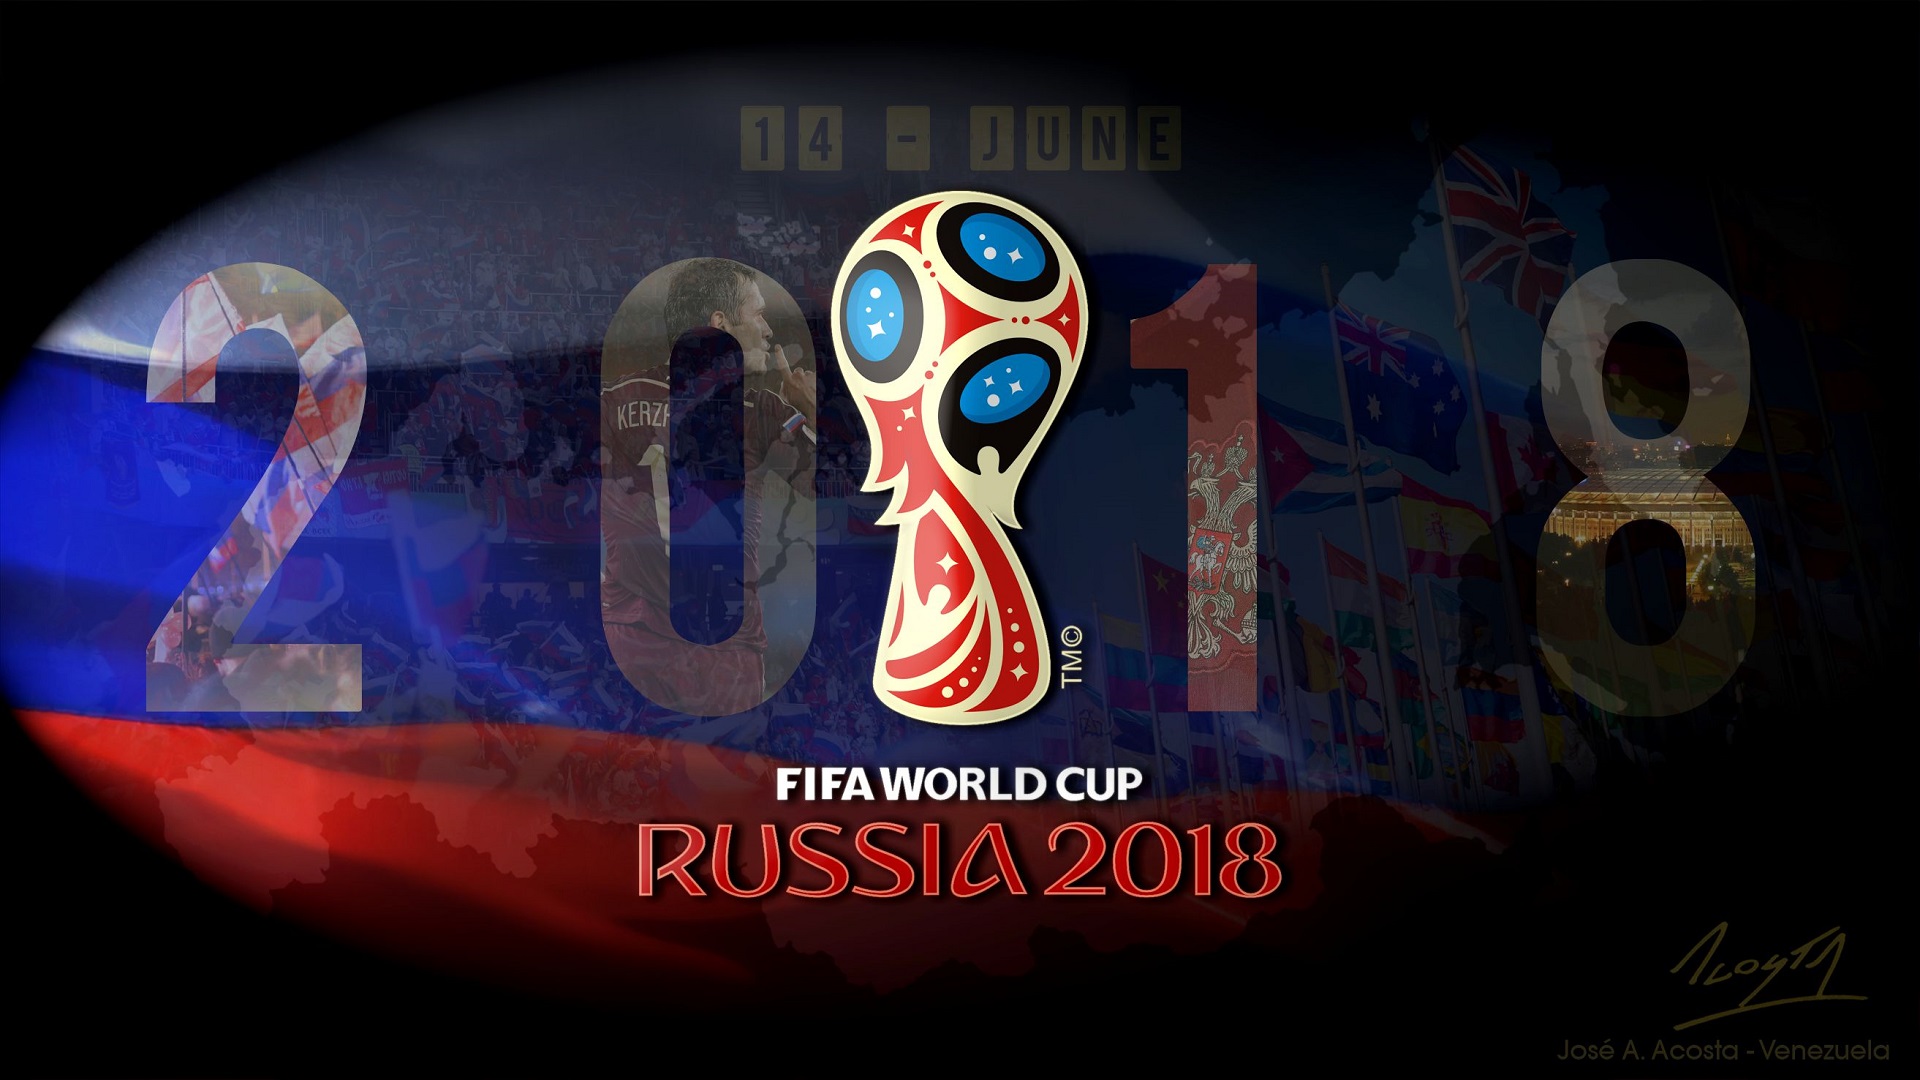 FIFA World Cup 2018 Wallpaper, Best Hd